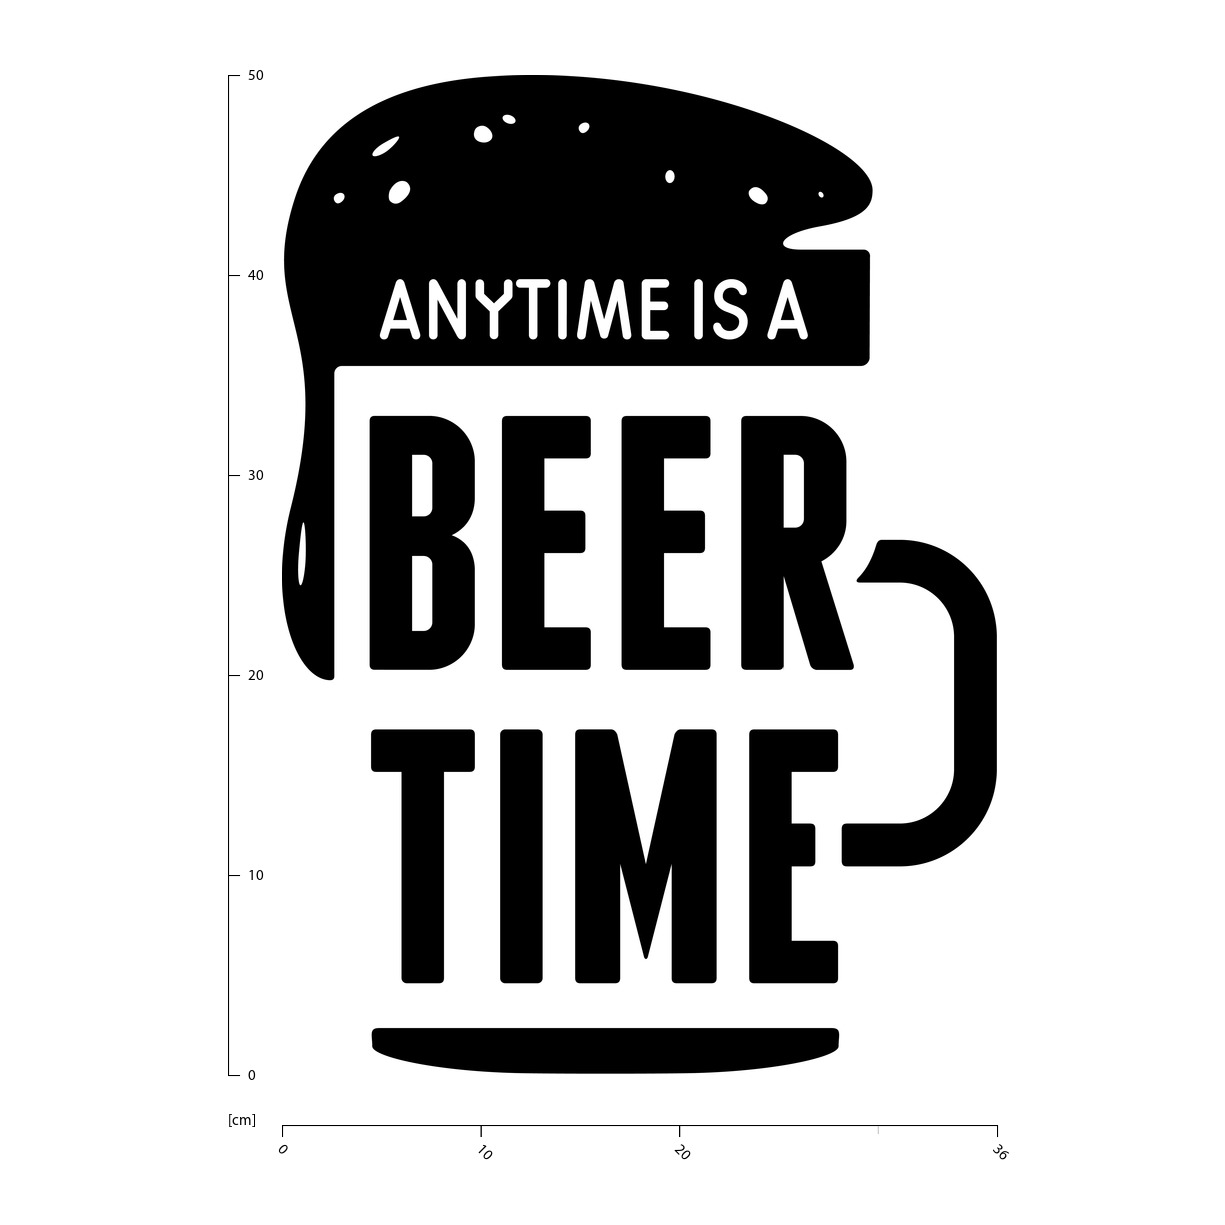 In qualsiasi momento è tempo di birra Citazione dellalcool Adesivo WS-46168